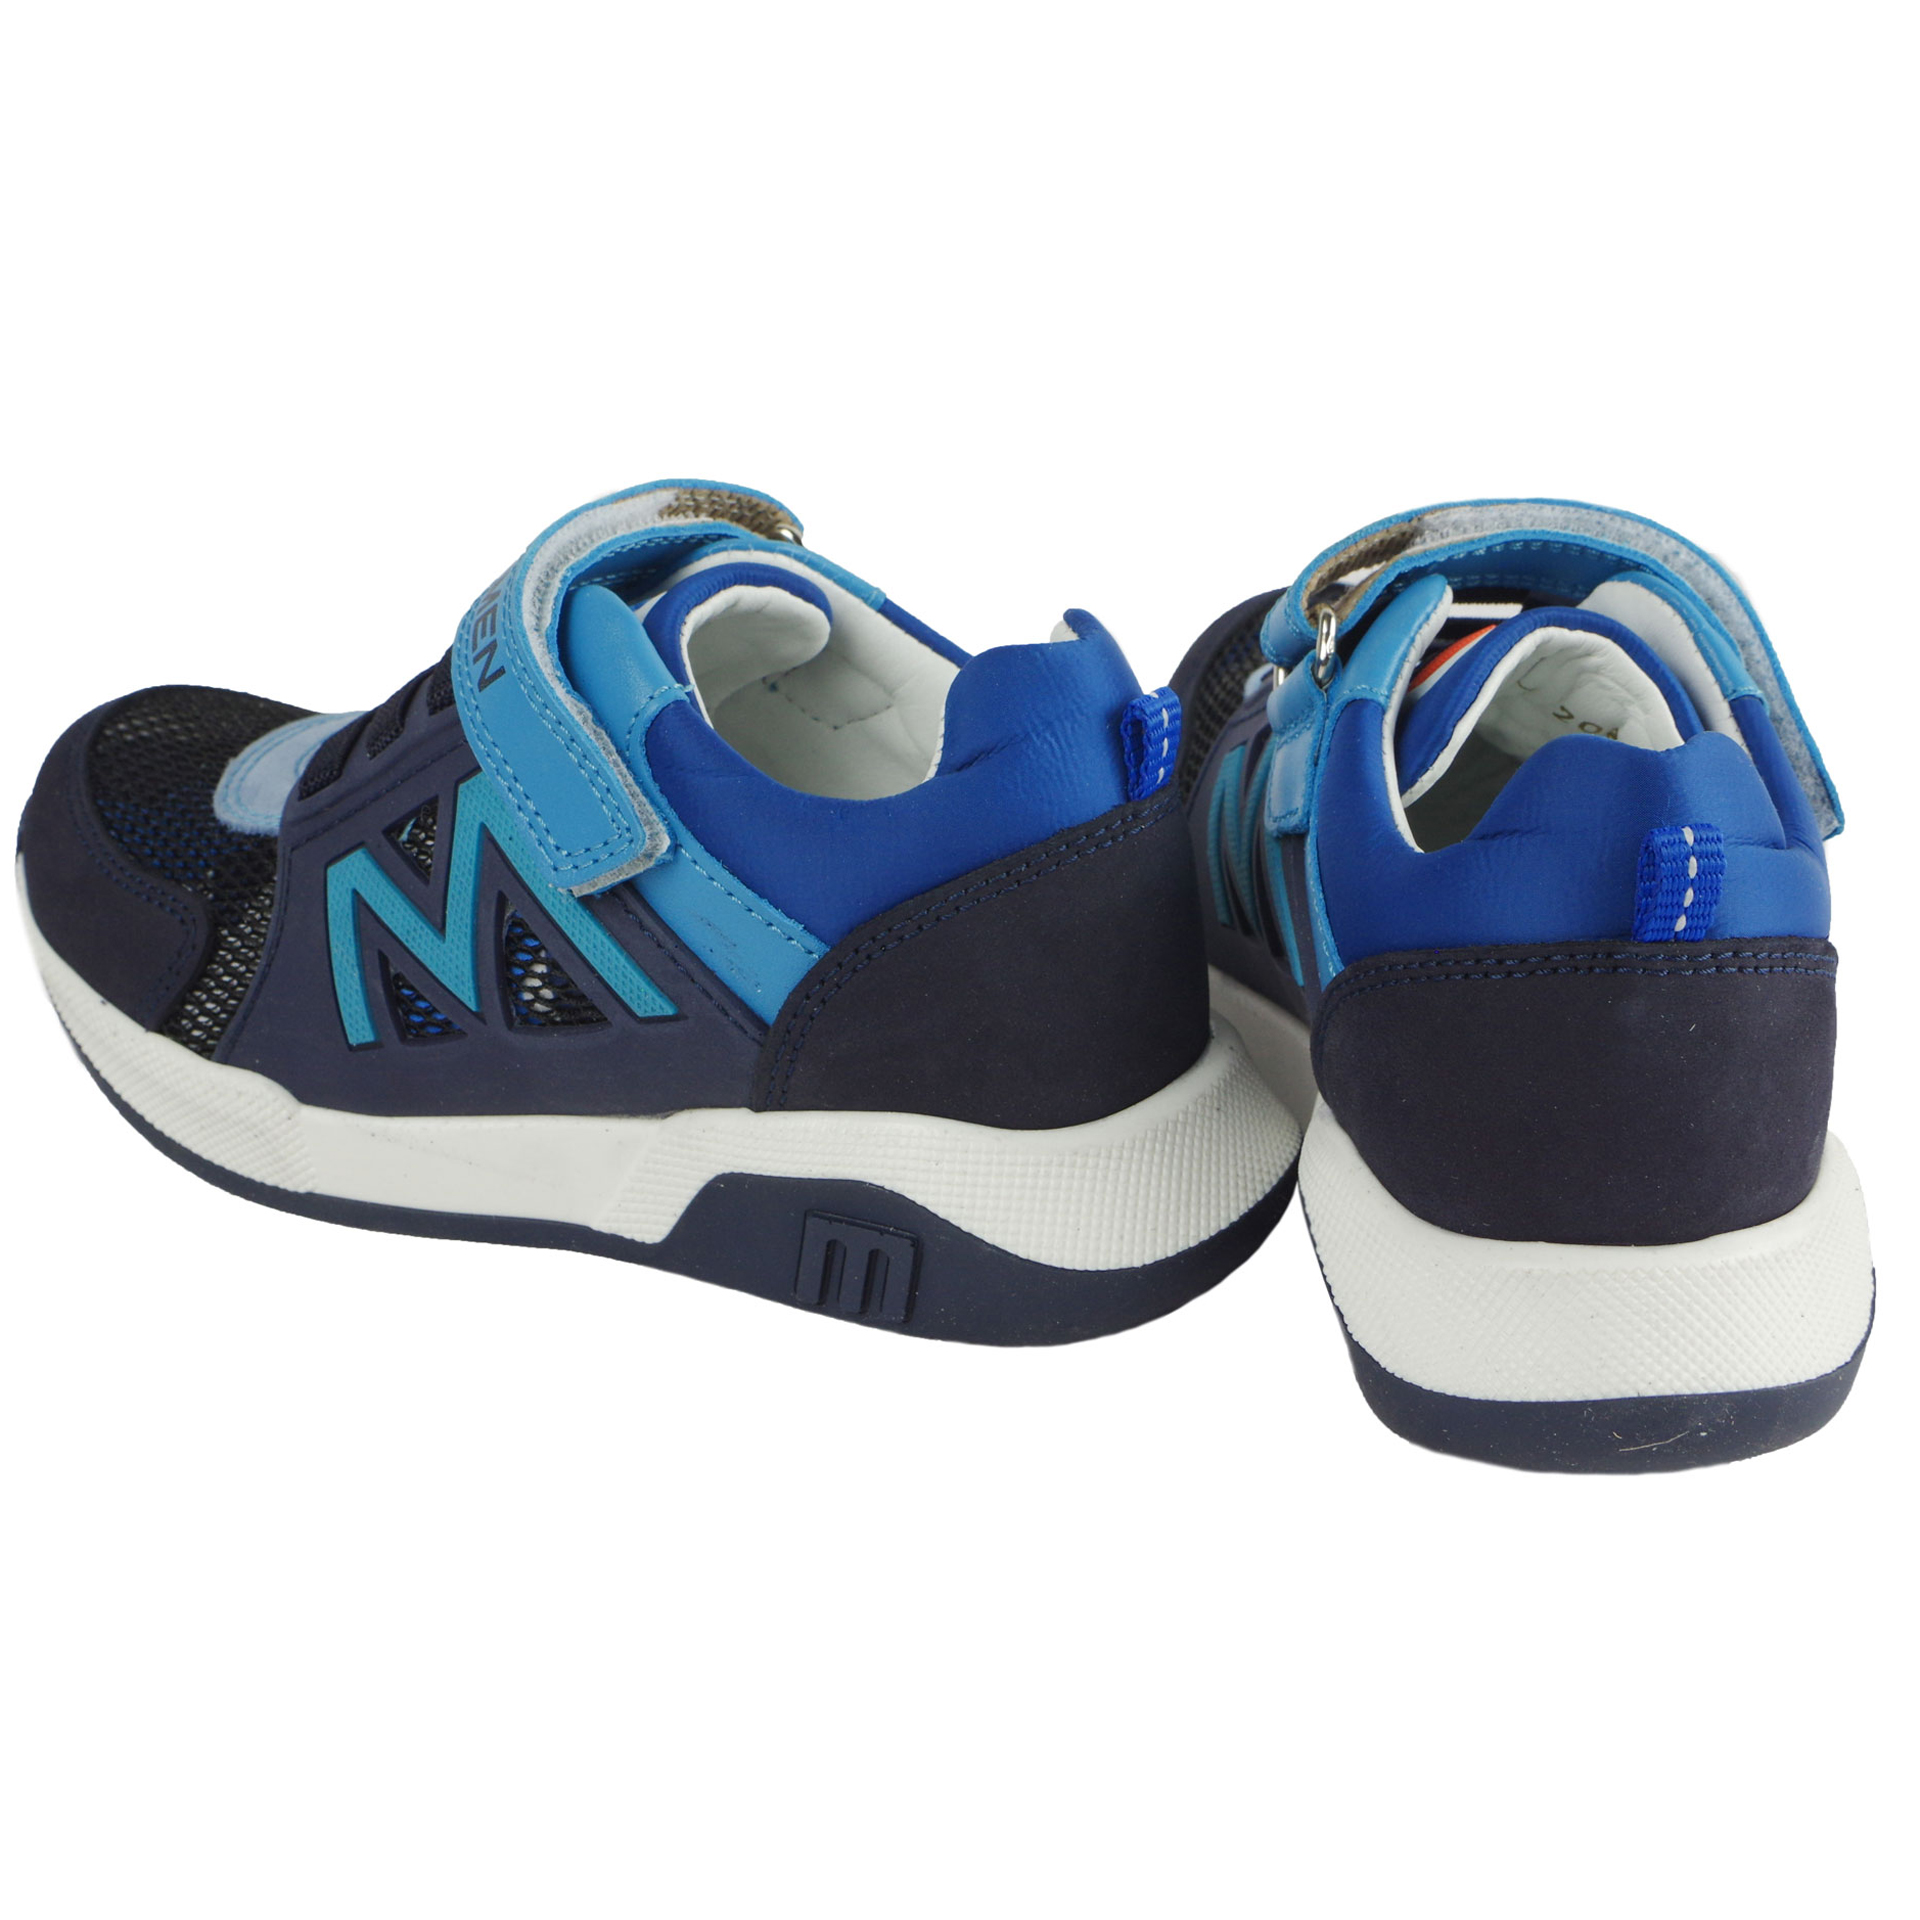 Кросівки на хлопчика (2055) для хлопчика, матеріал Натуральна шкіра, Синій колір, 26-30 розміри – Sole Kids. Фото 4